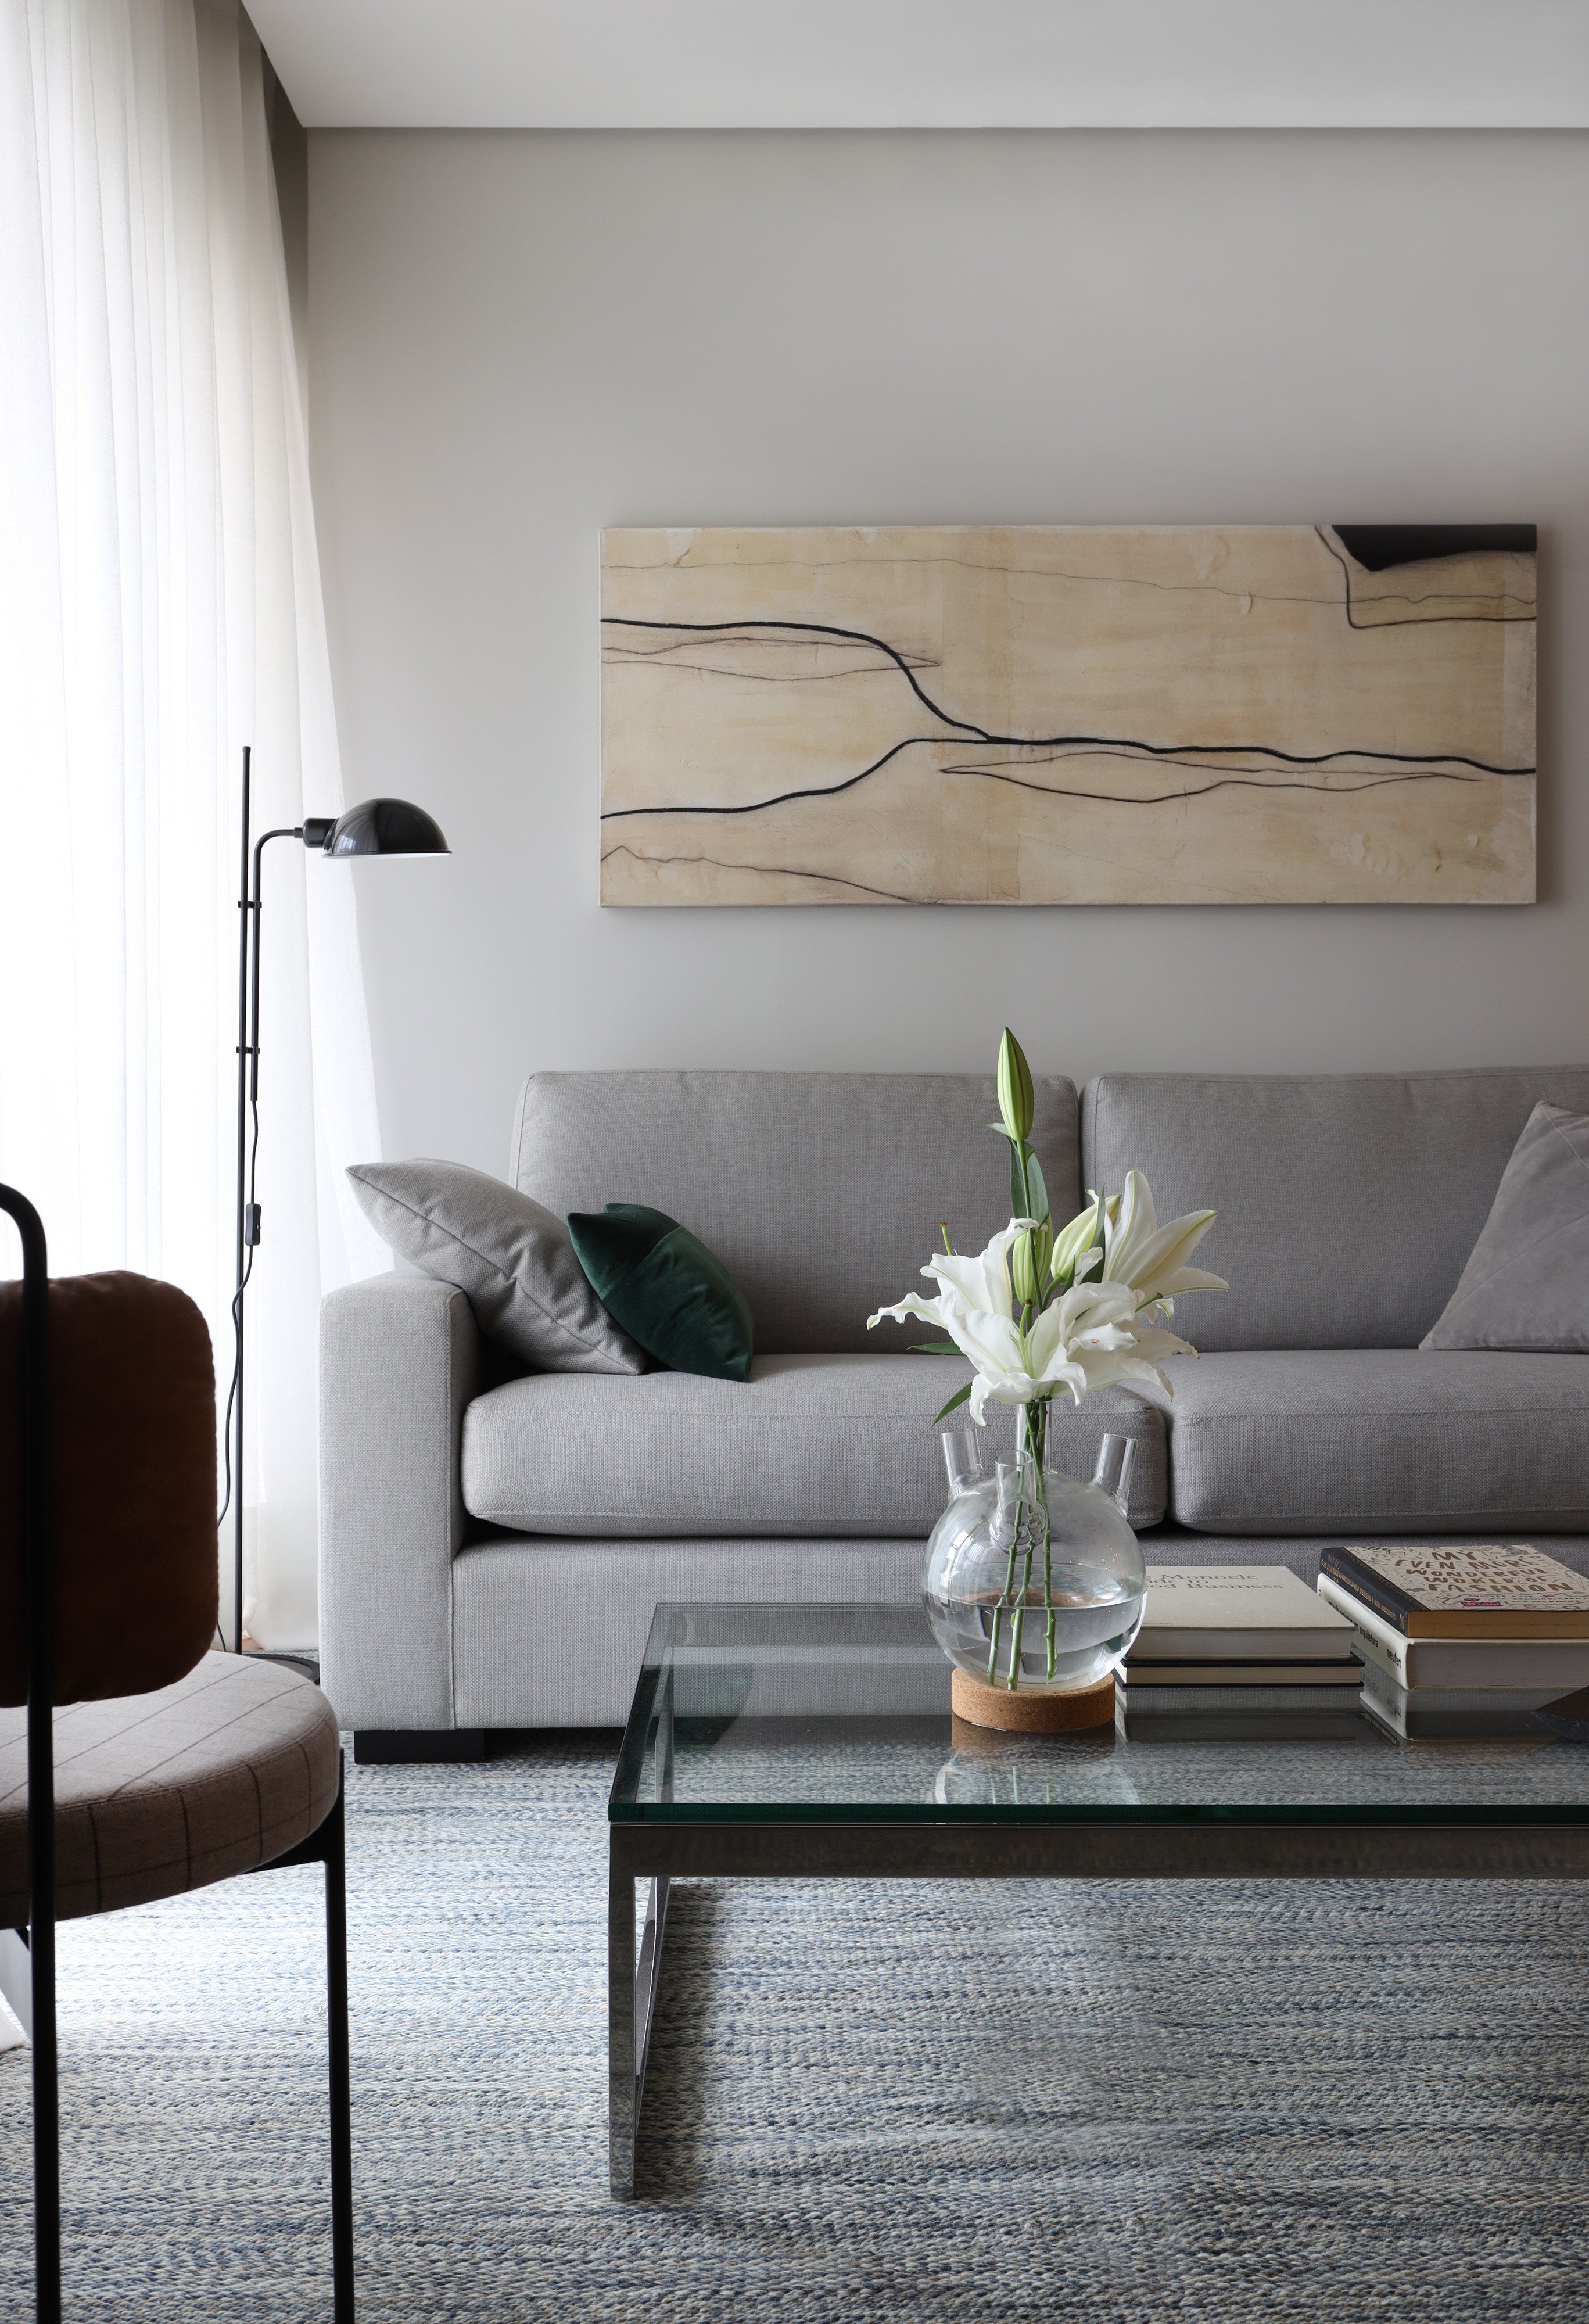 Décor do dia: sala de estar com decoração neutra e tons de cinza (Foto: Marco Antonio)